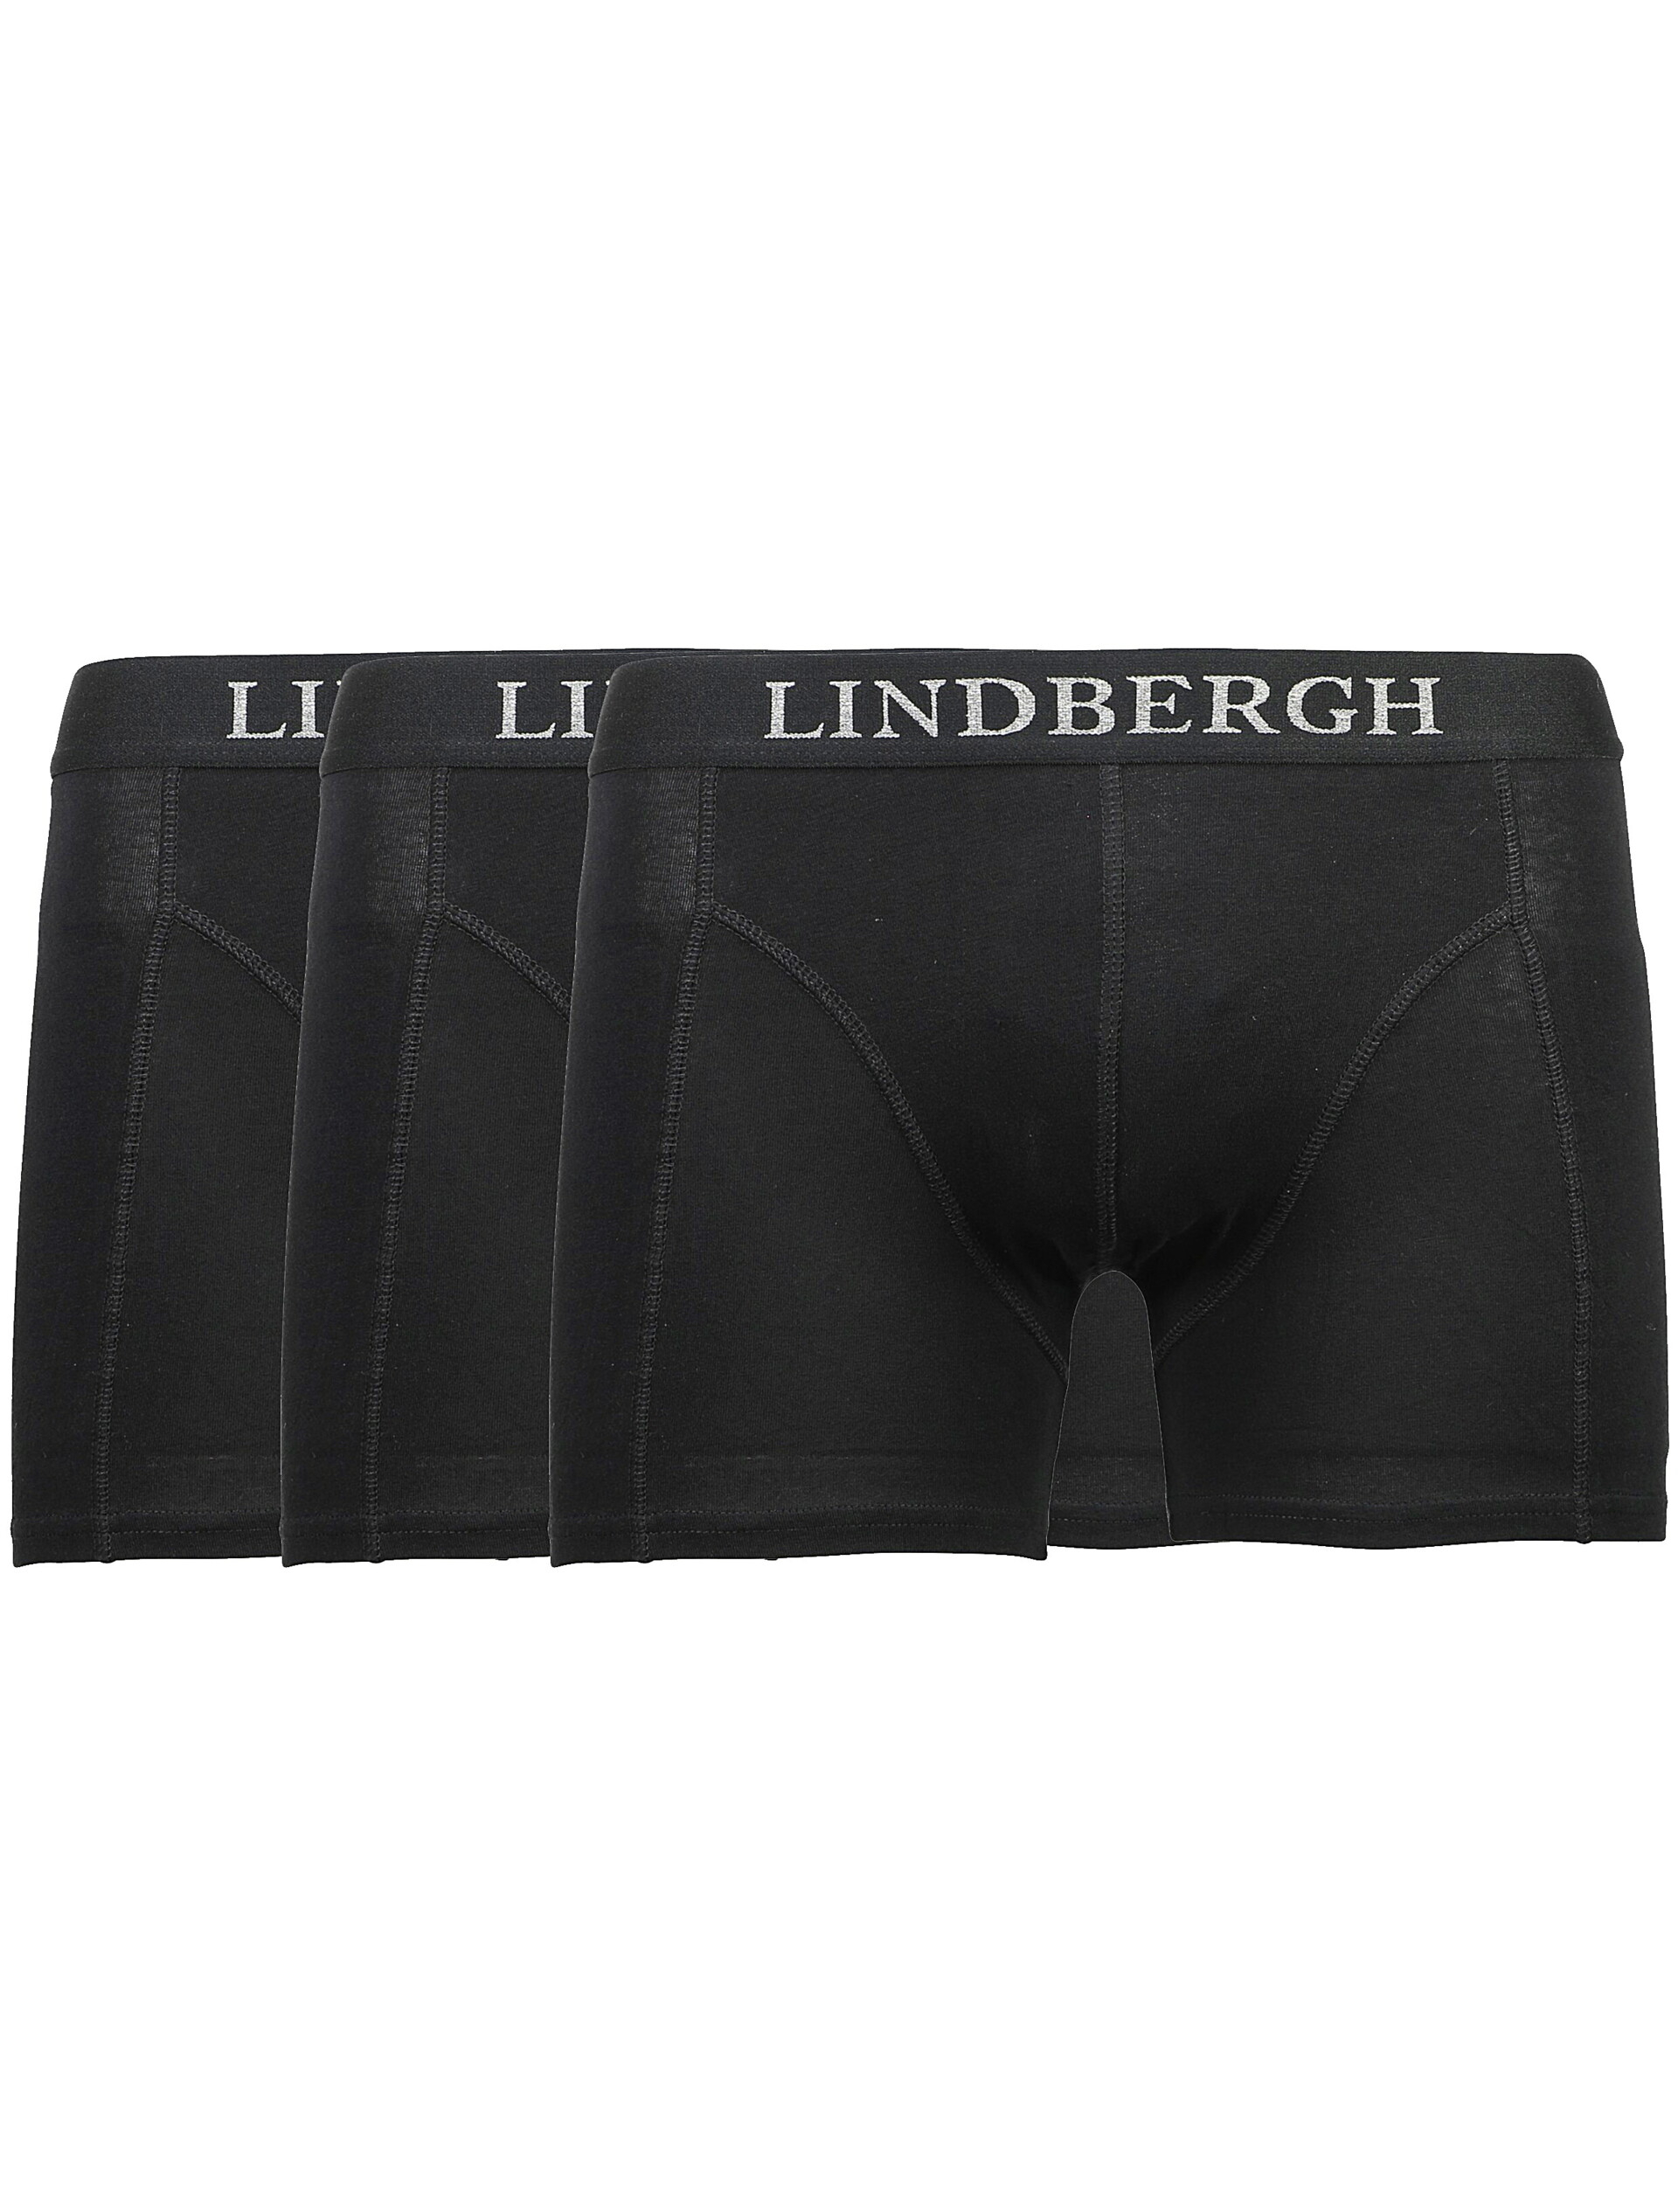 Lindbergh Boxershorts zwart / black